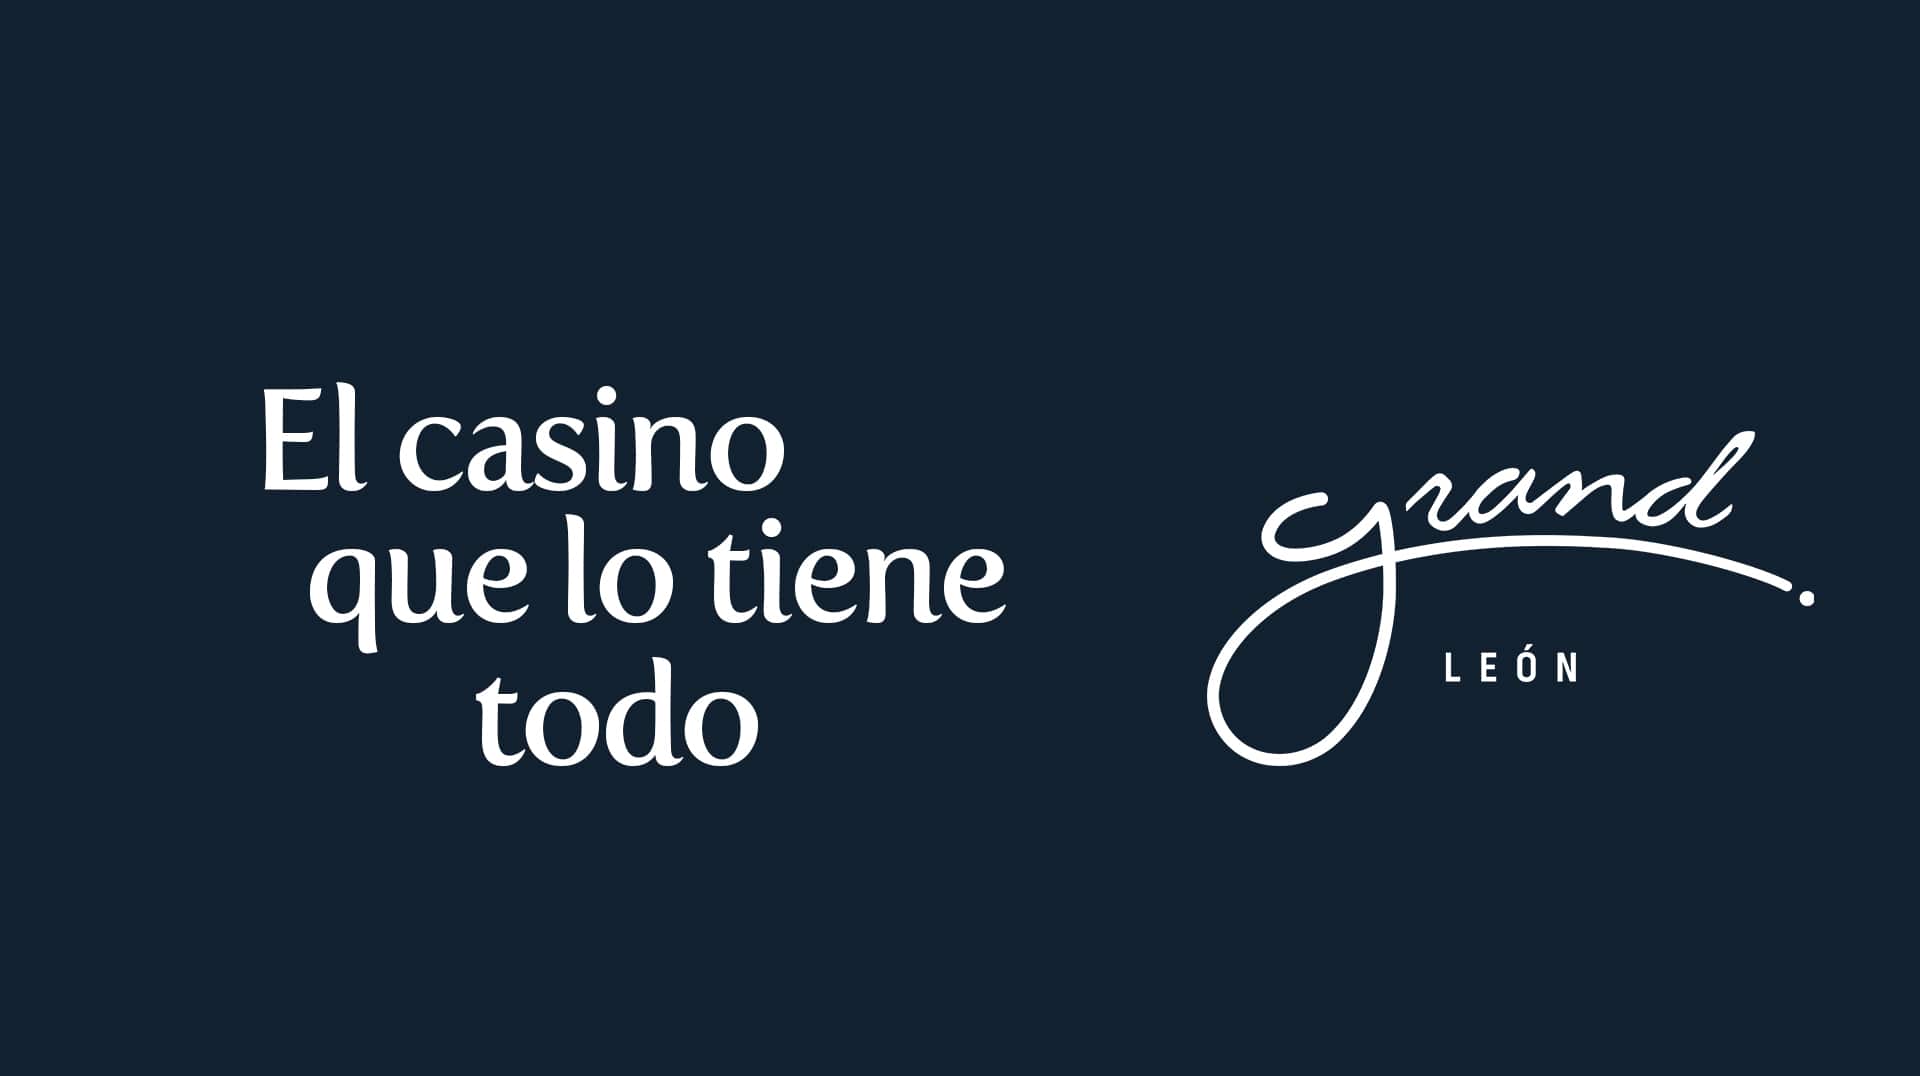 Grand León, el casino a visitar en León, Guanajuato, en el centro de México.